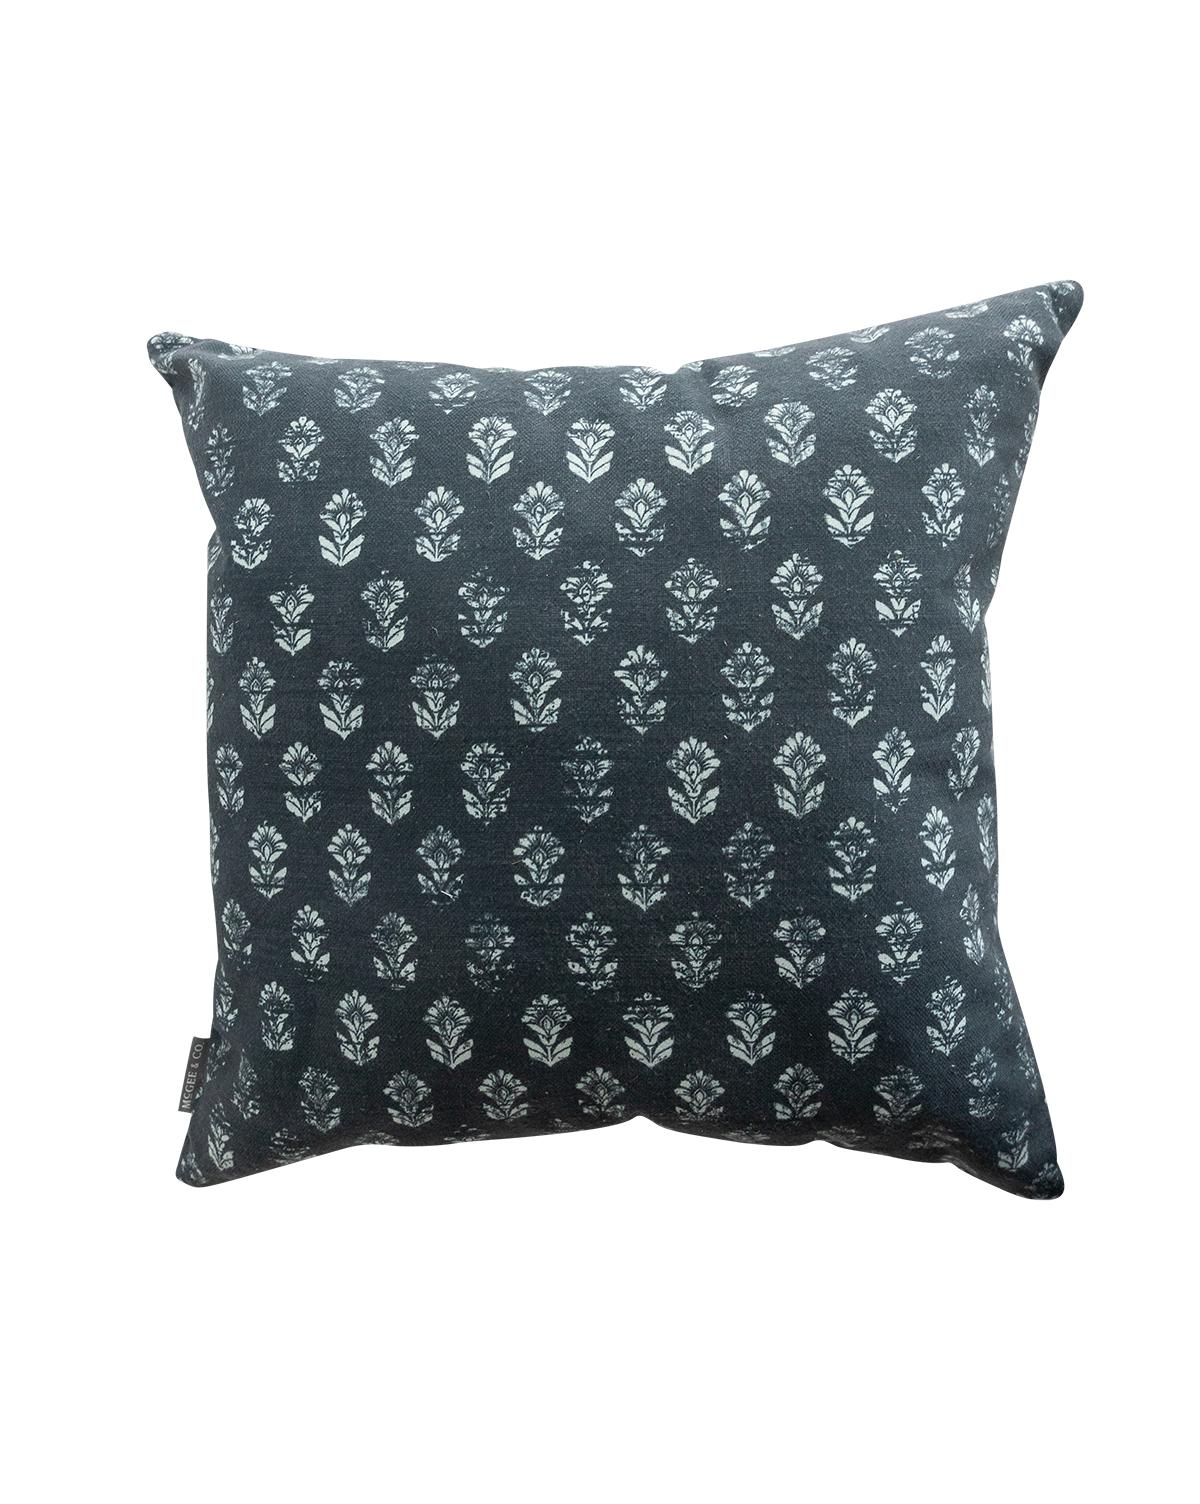 Amara Outdoor Pillow, 22" x 22" - Image 0